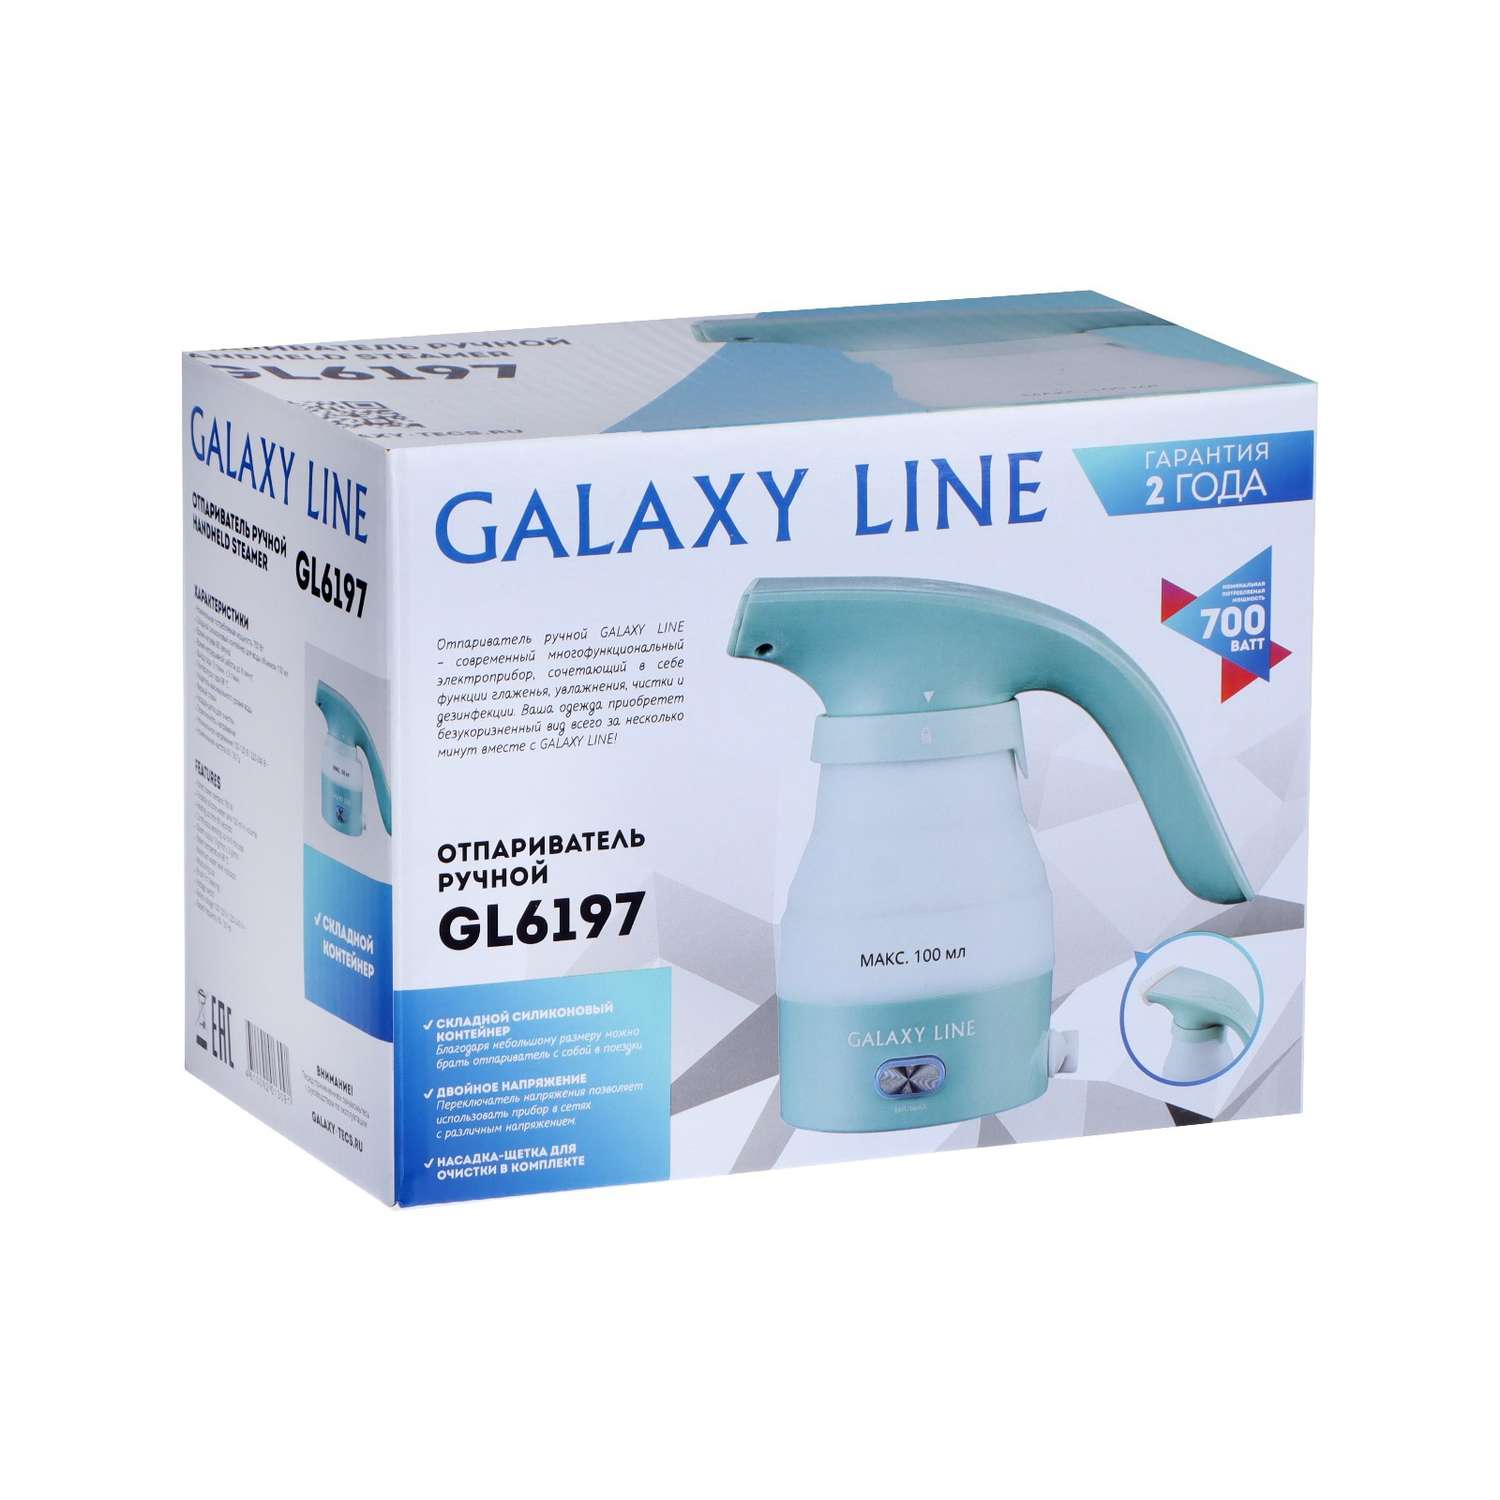 Отпариватель Sima-Land Galaxy LINE GL 6197 ручной 700 Вт 100 мл складной силиконовый контейнер - фото 9